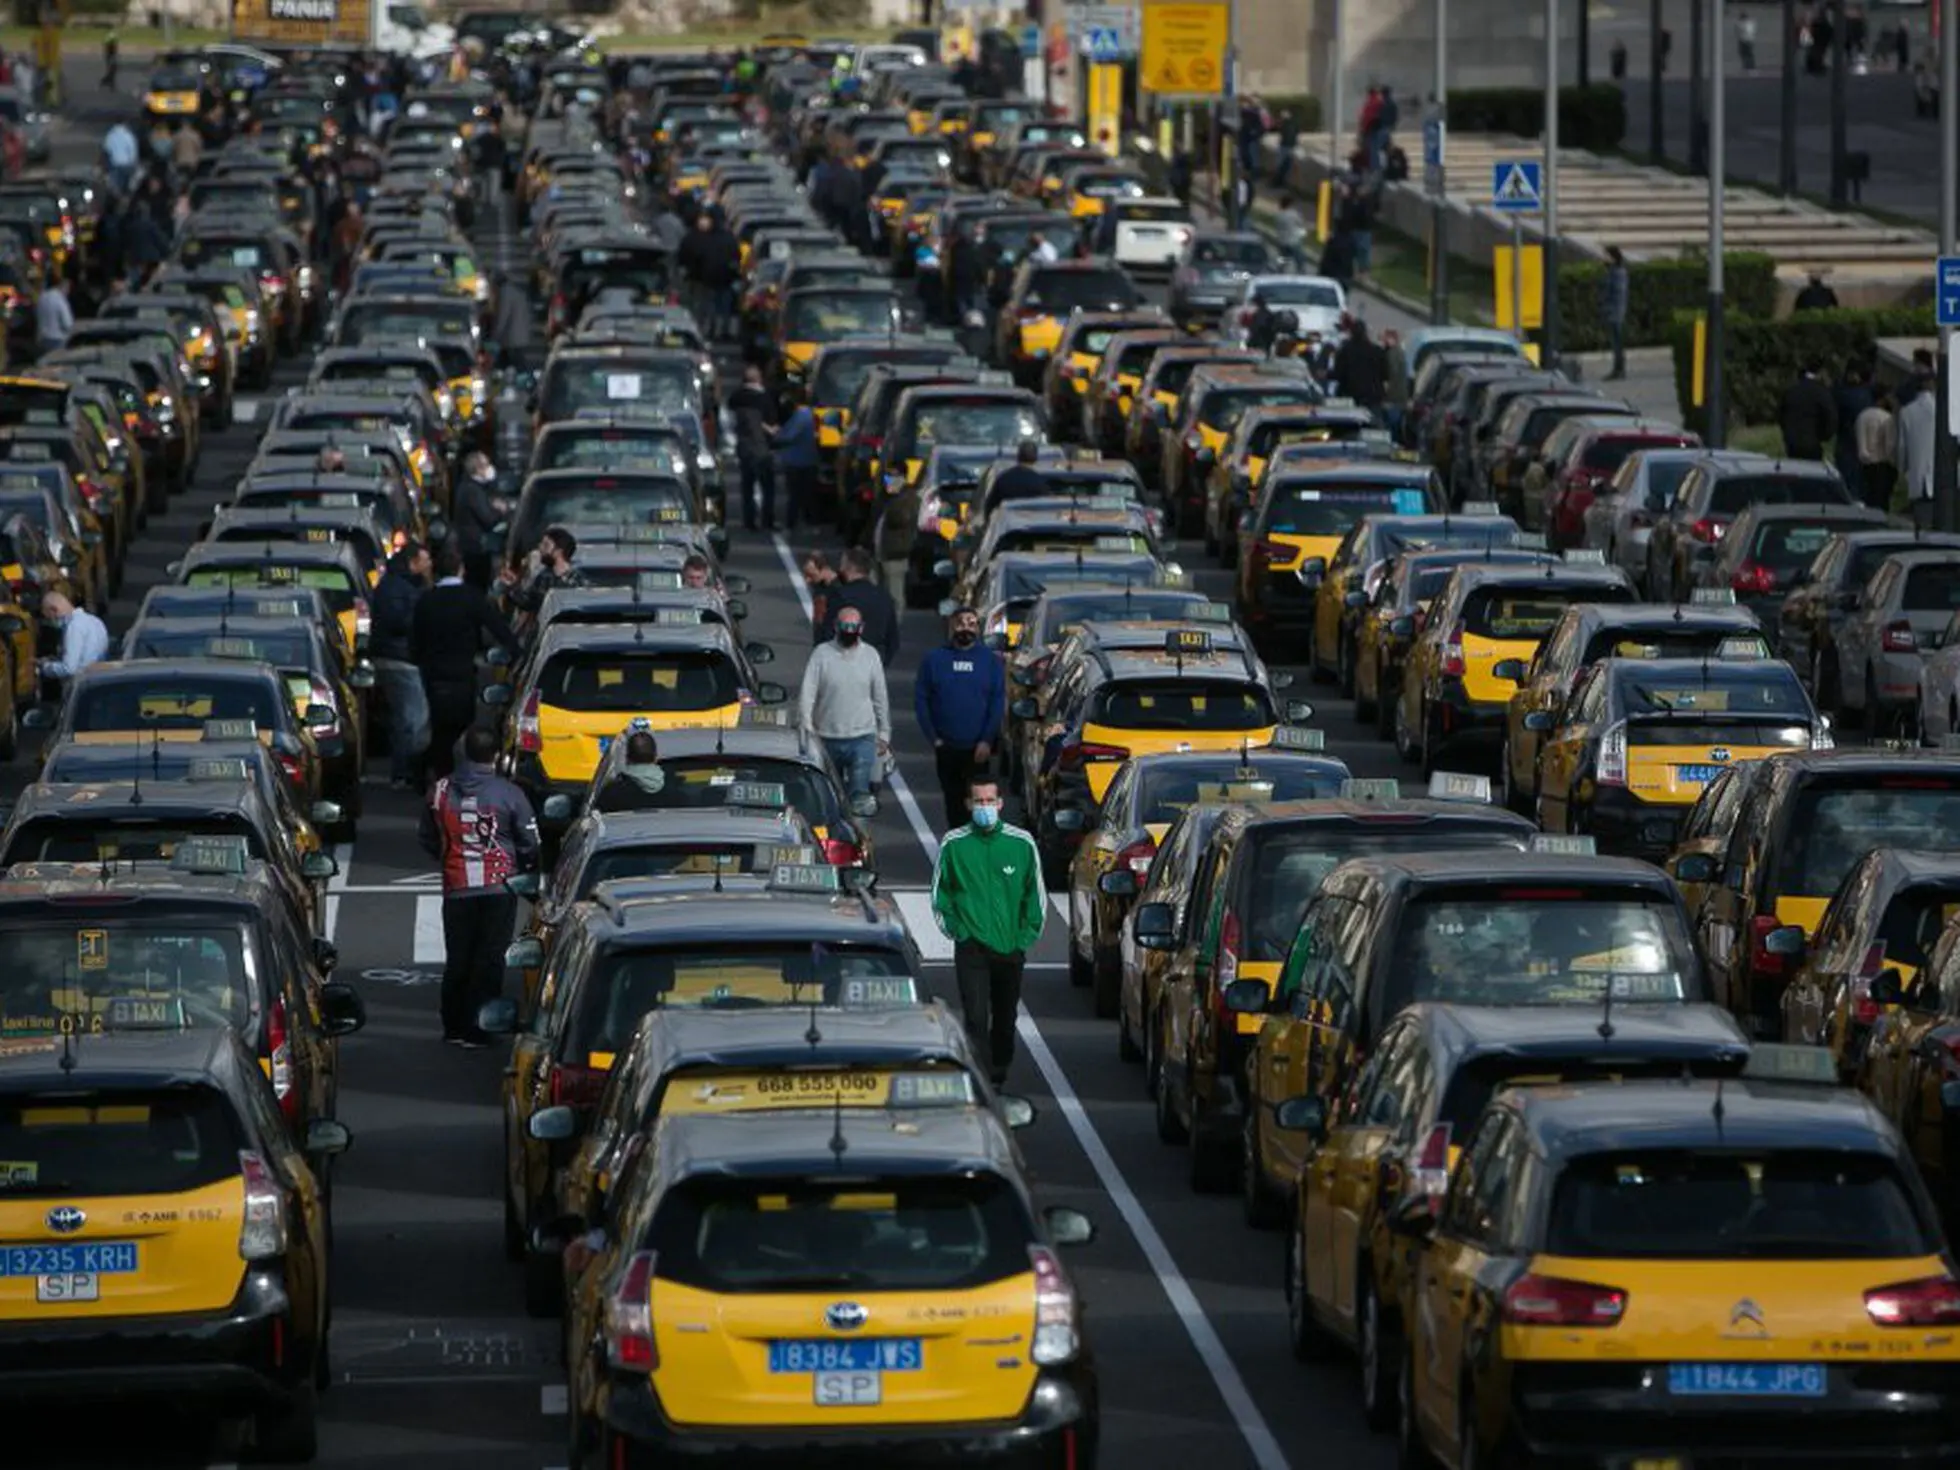 autorizacion permiso de carreteras para taxi de barcelona - Qué es el visado de las autorizaciones de transporte